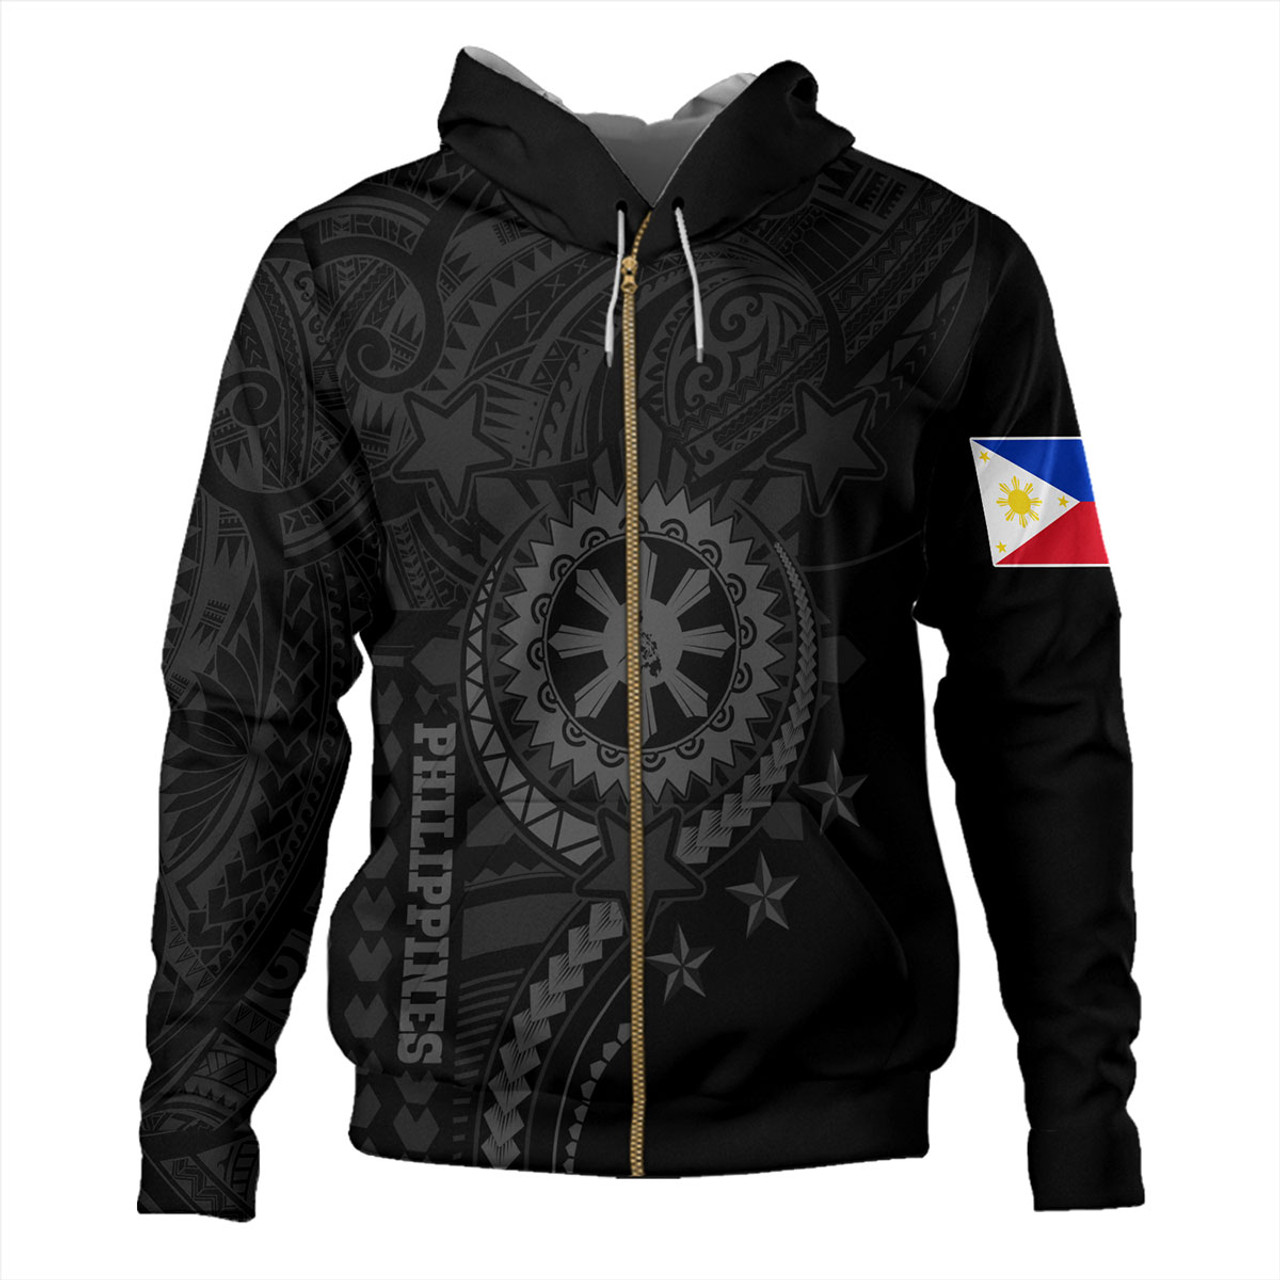 Philippines Filipinos Hoodie - Proud To Be Filipino Tribal Sun Batok Grey Style